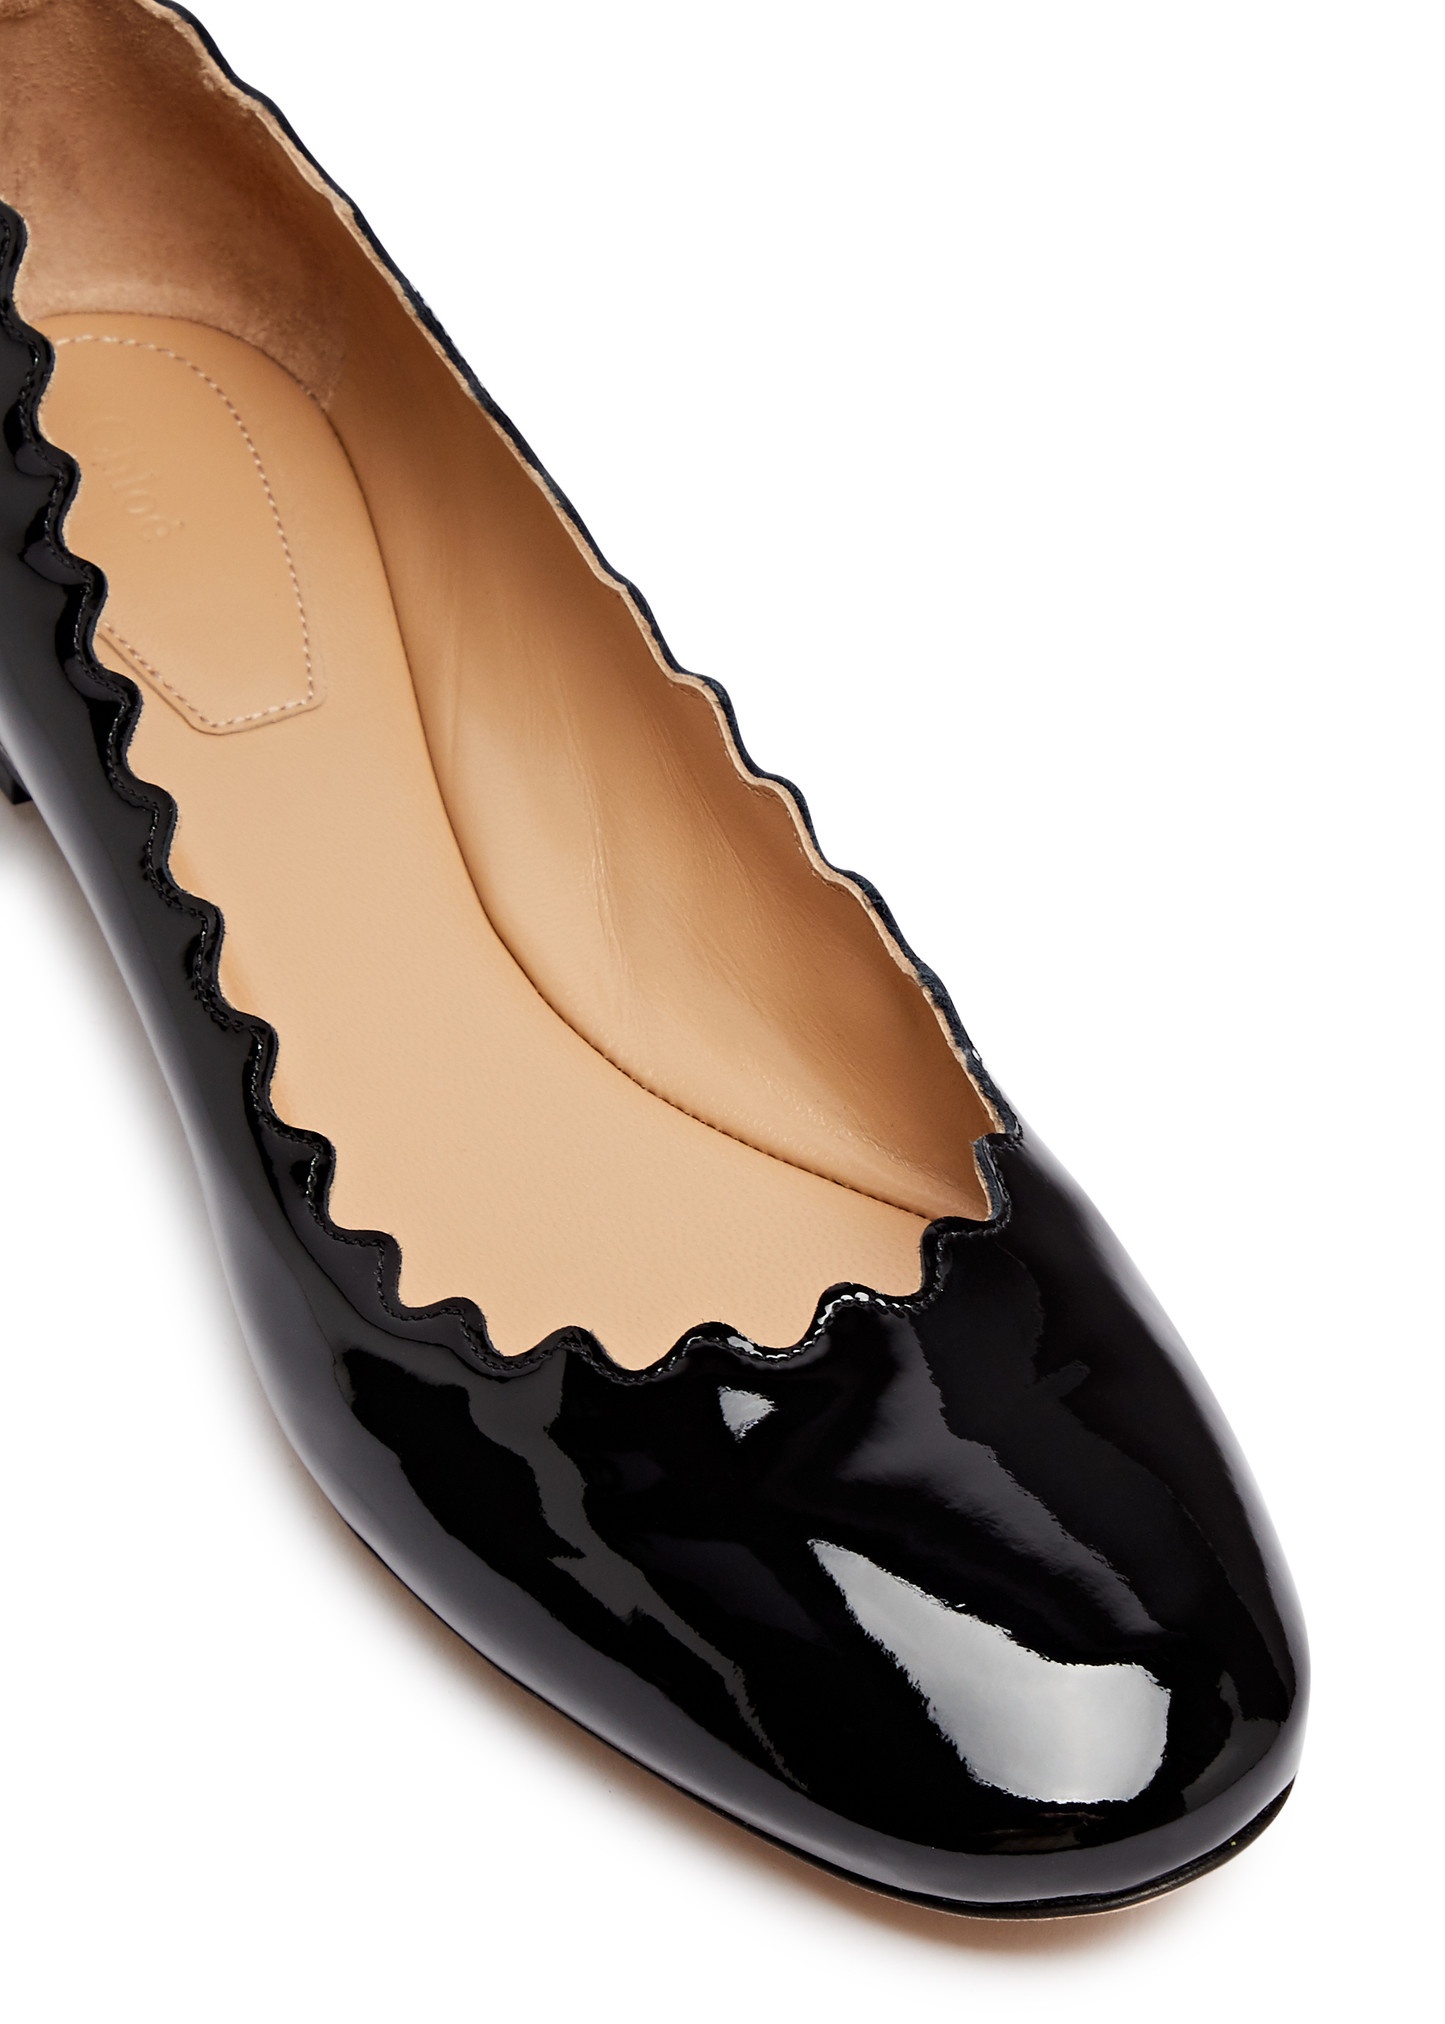 Lauren patent leather ballet flats - 4